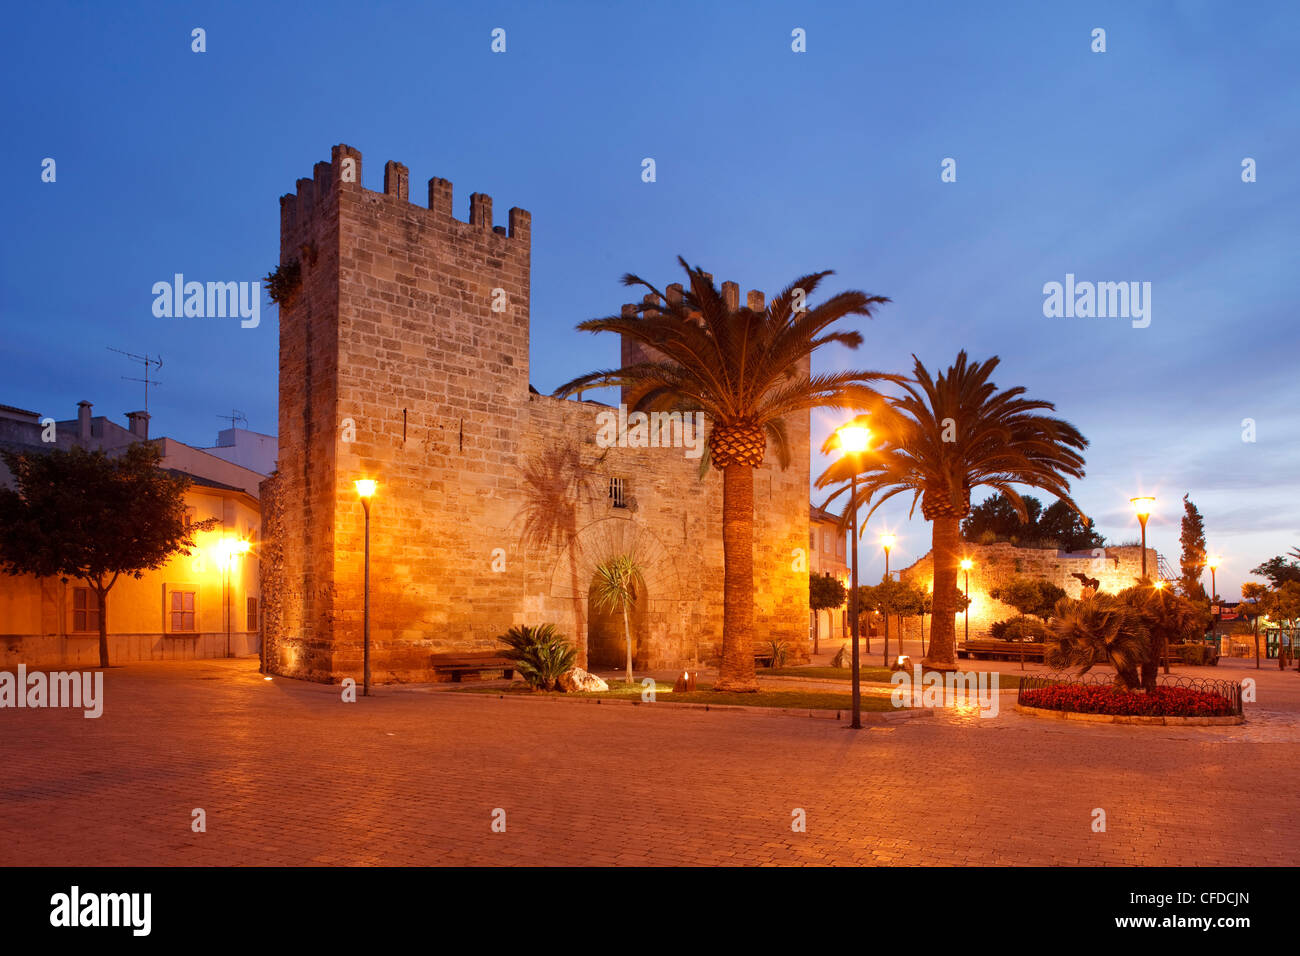 Porta del Moll, historic town gate, 14 century, Alcudia, Mallorca, Balearic Islands, Spain, Europe Stock Photo